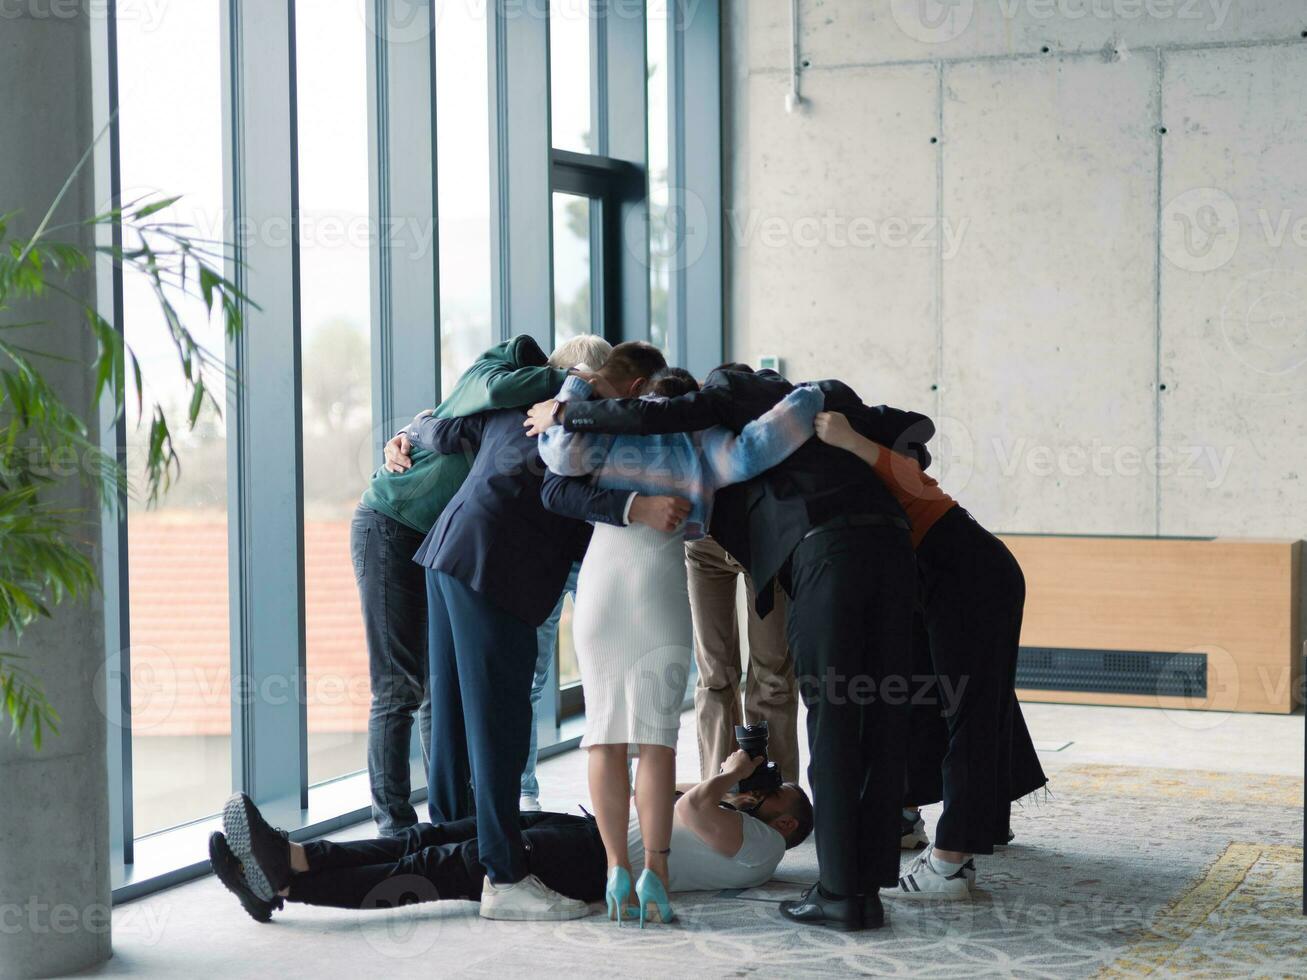 buiten het podium. de fotograaf duurt een foto van een verschillend groep van zakenlieden in een modern kantoor wie knuffel elk andere in een cirkel